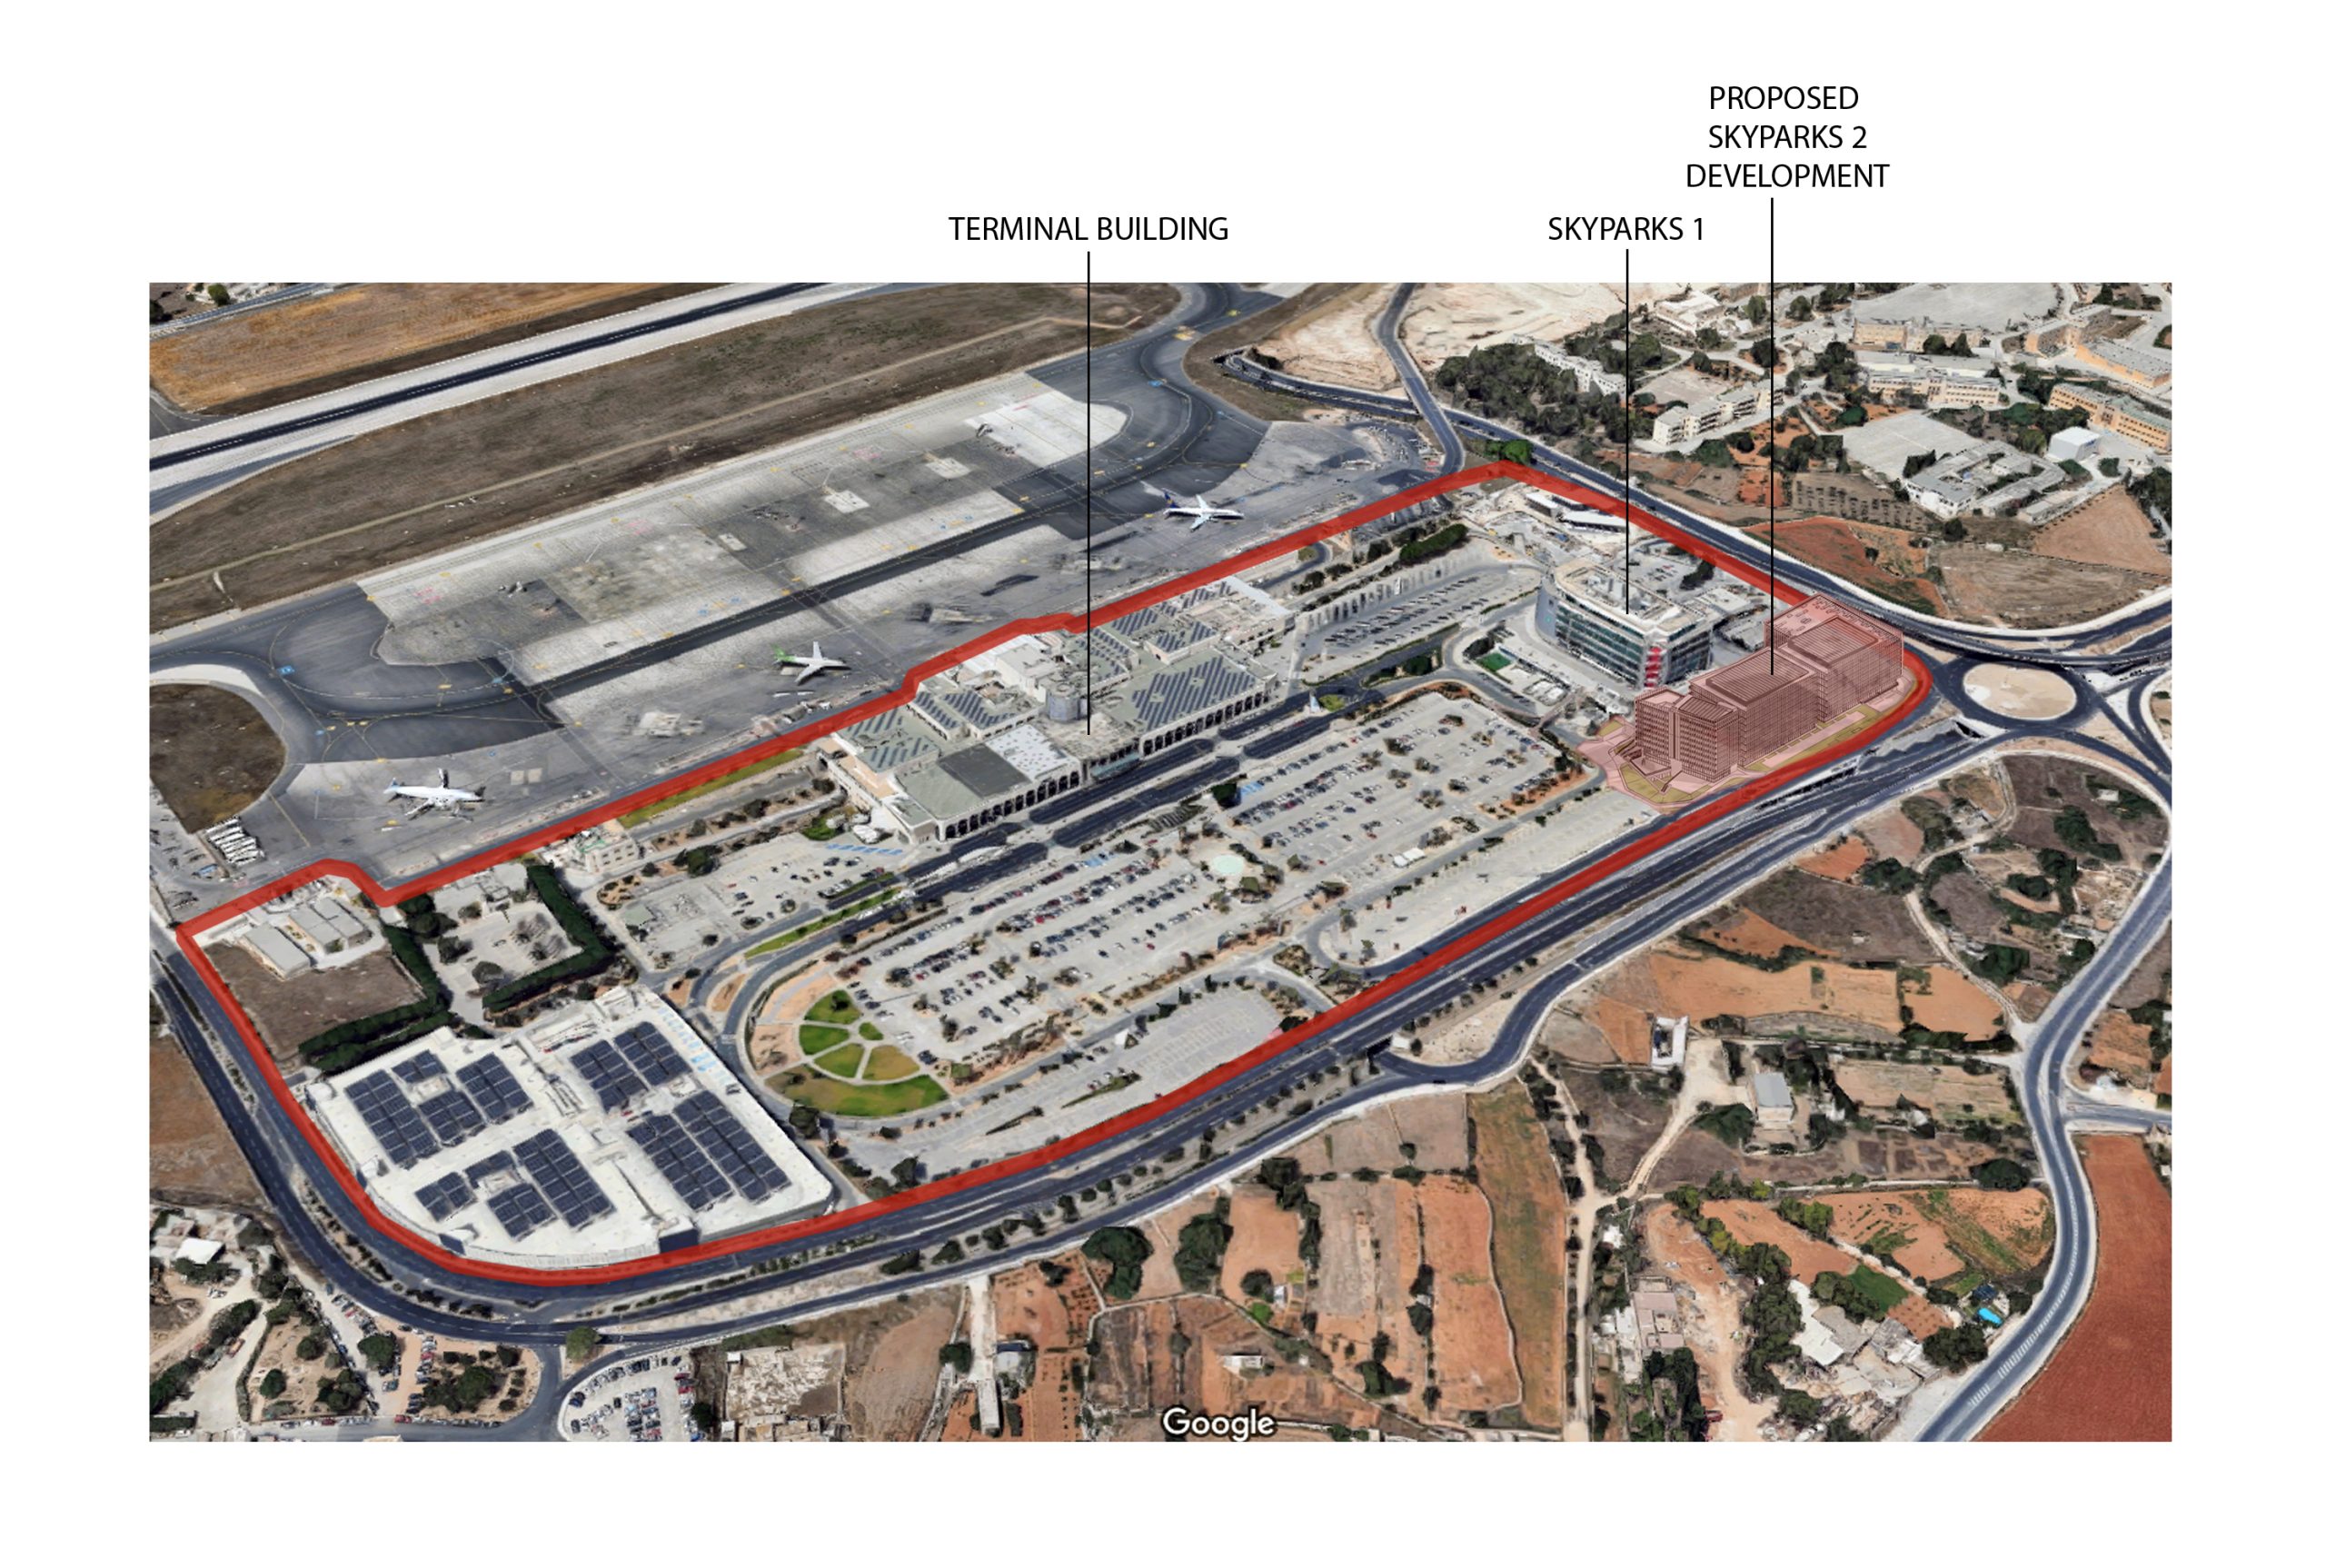 Malta international airport masterplan area